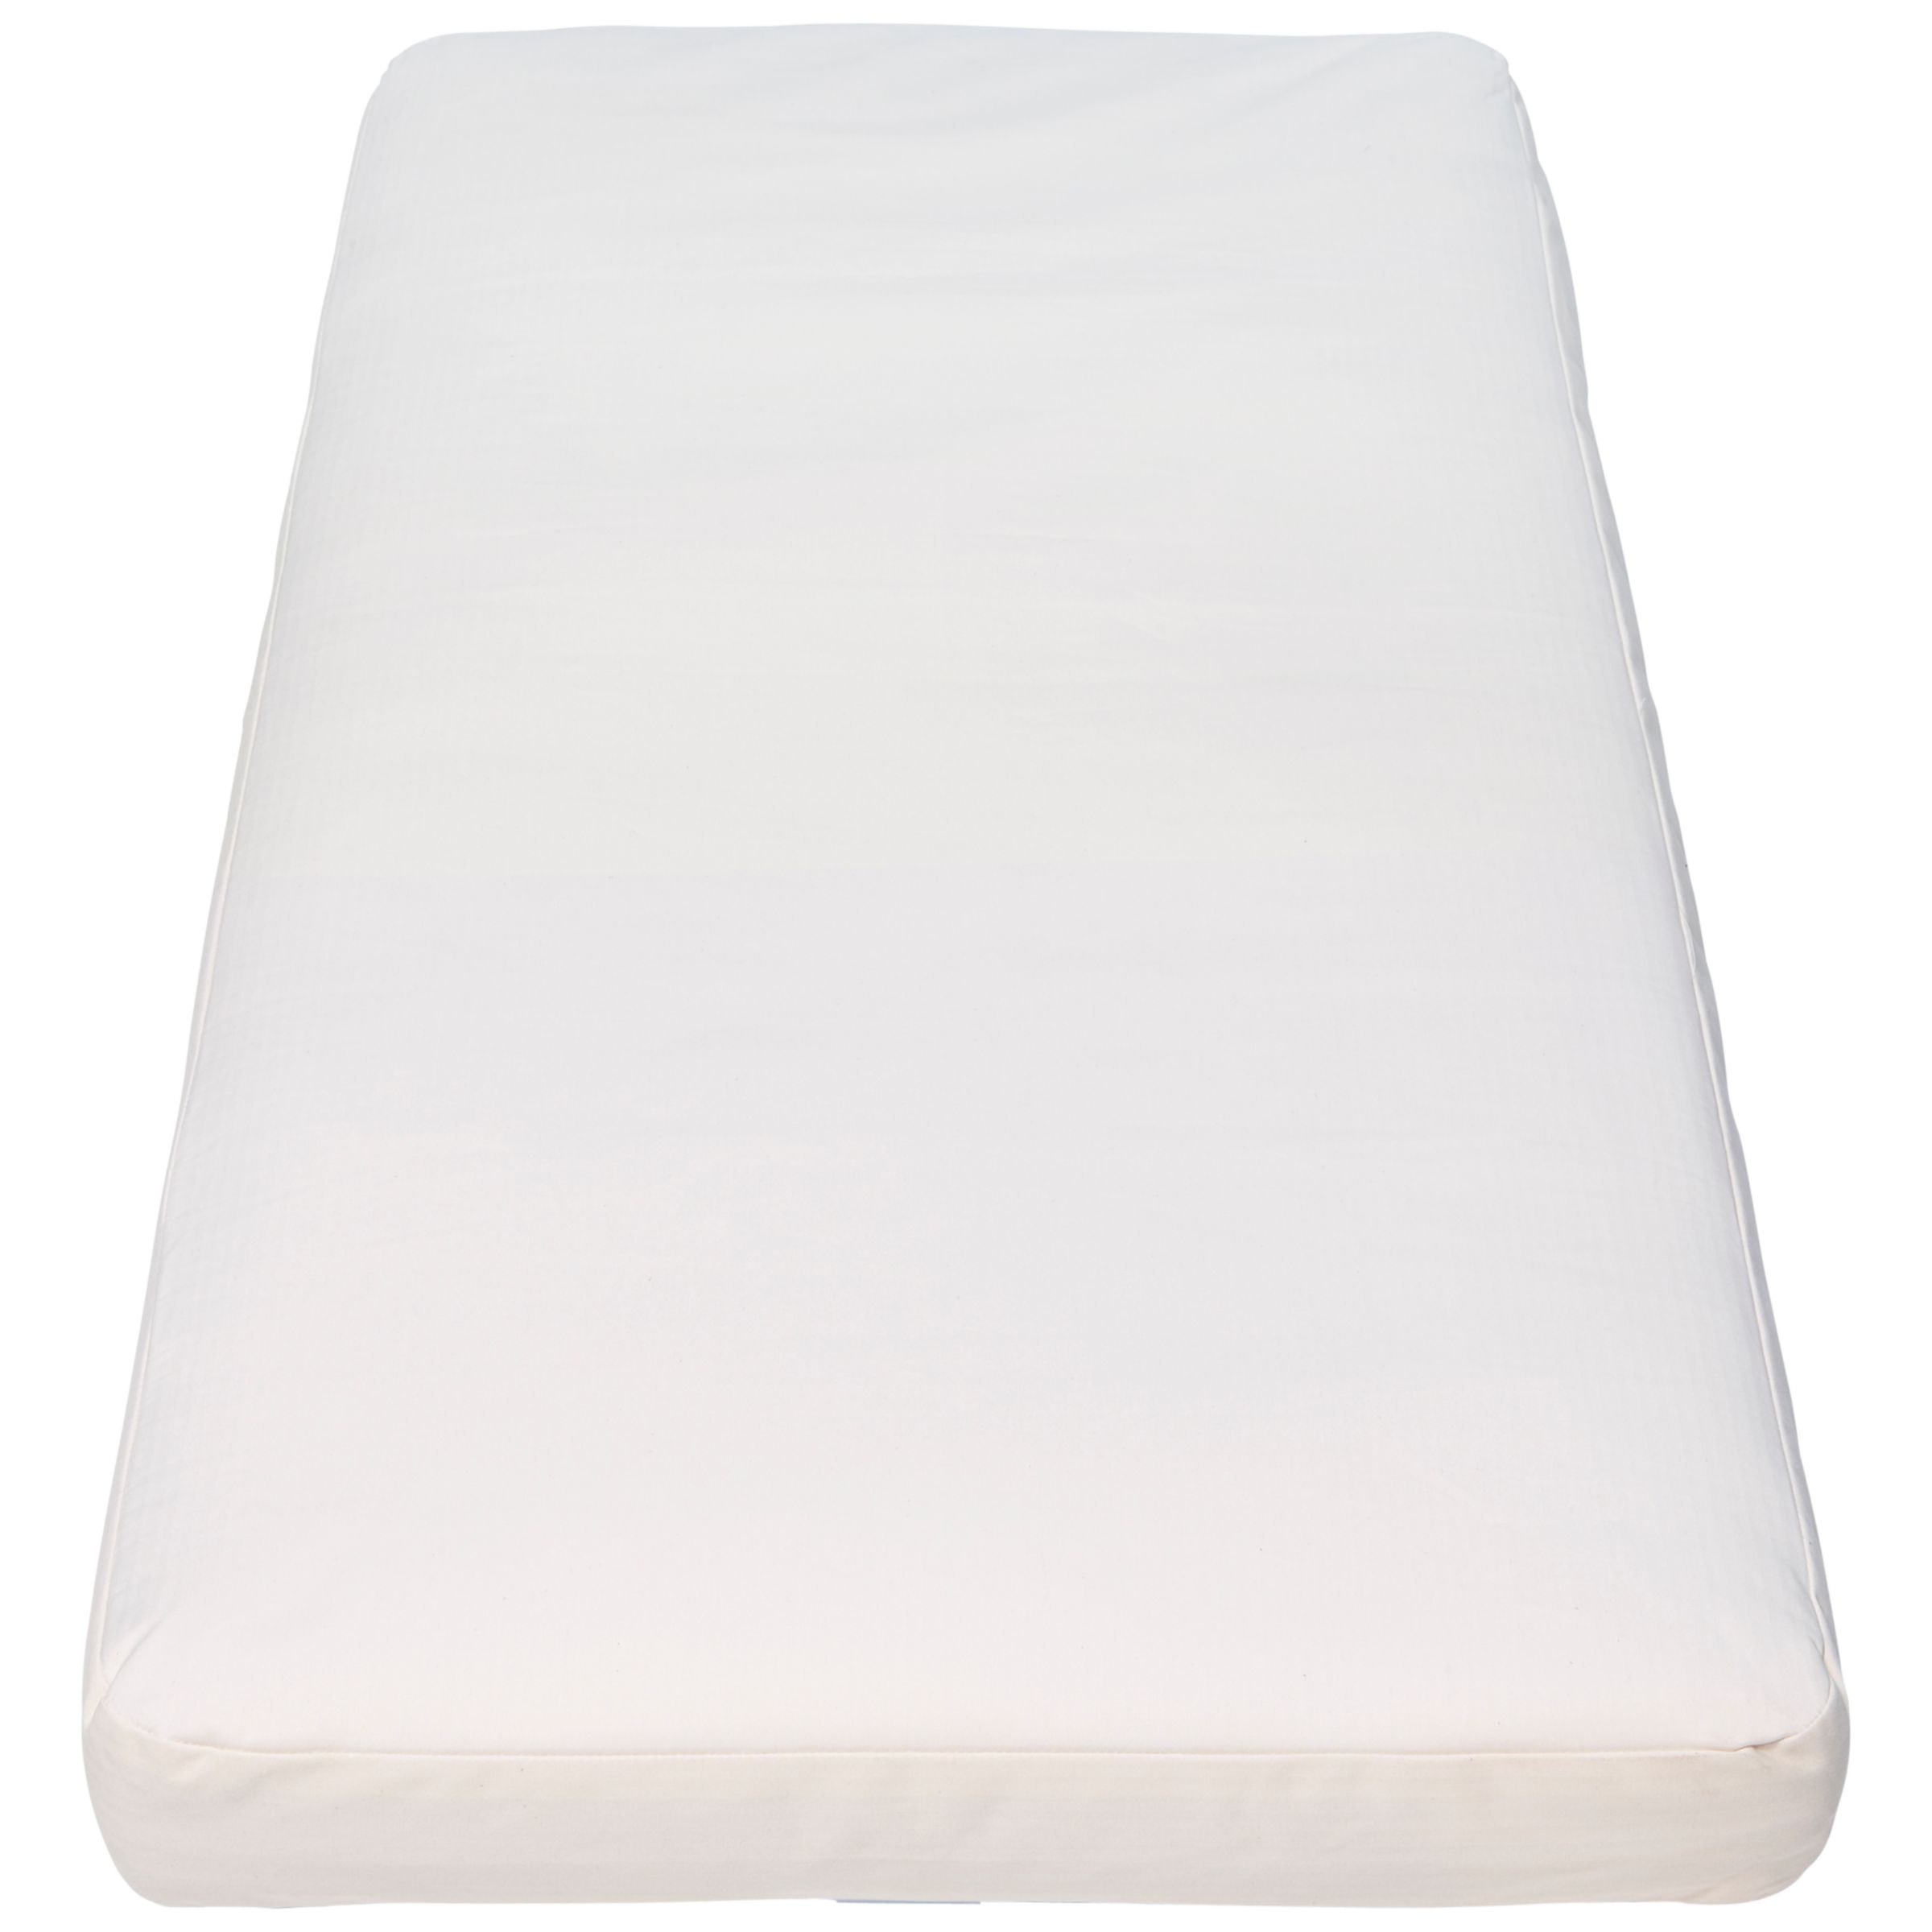 l140 x w70cm mattress